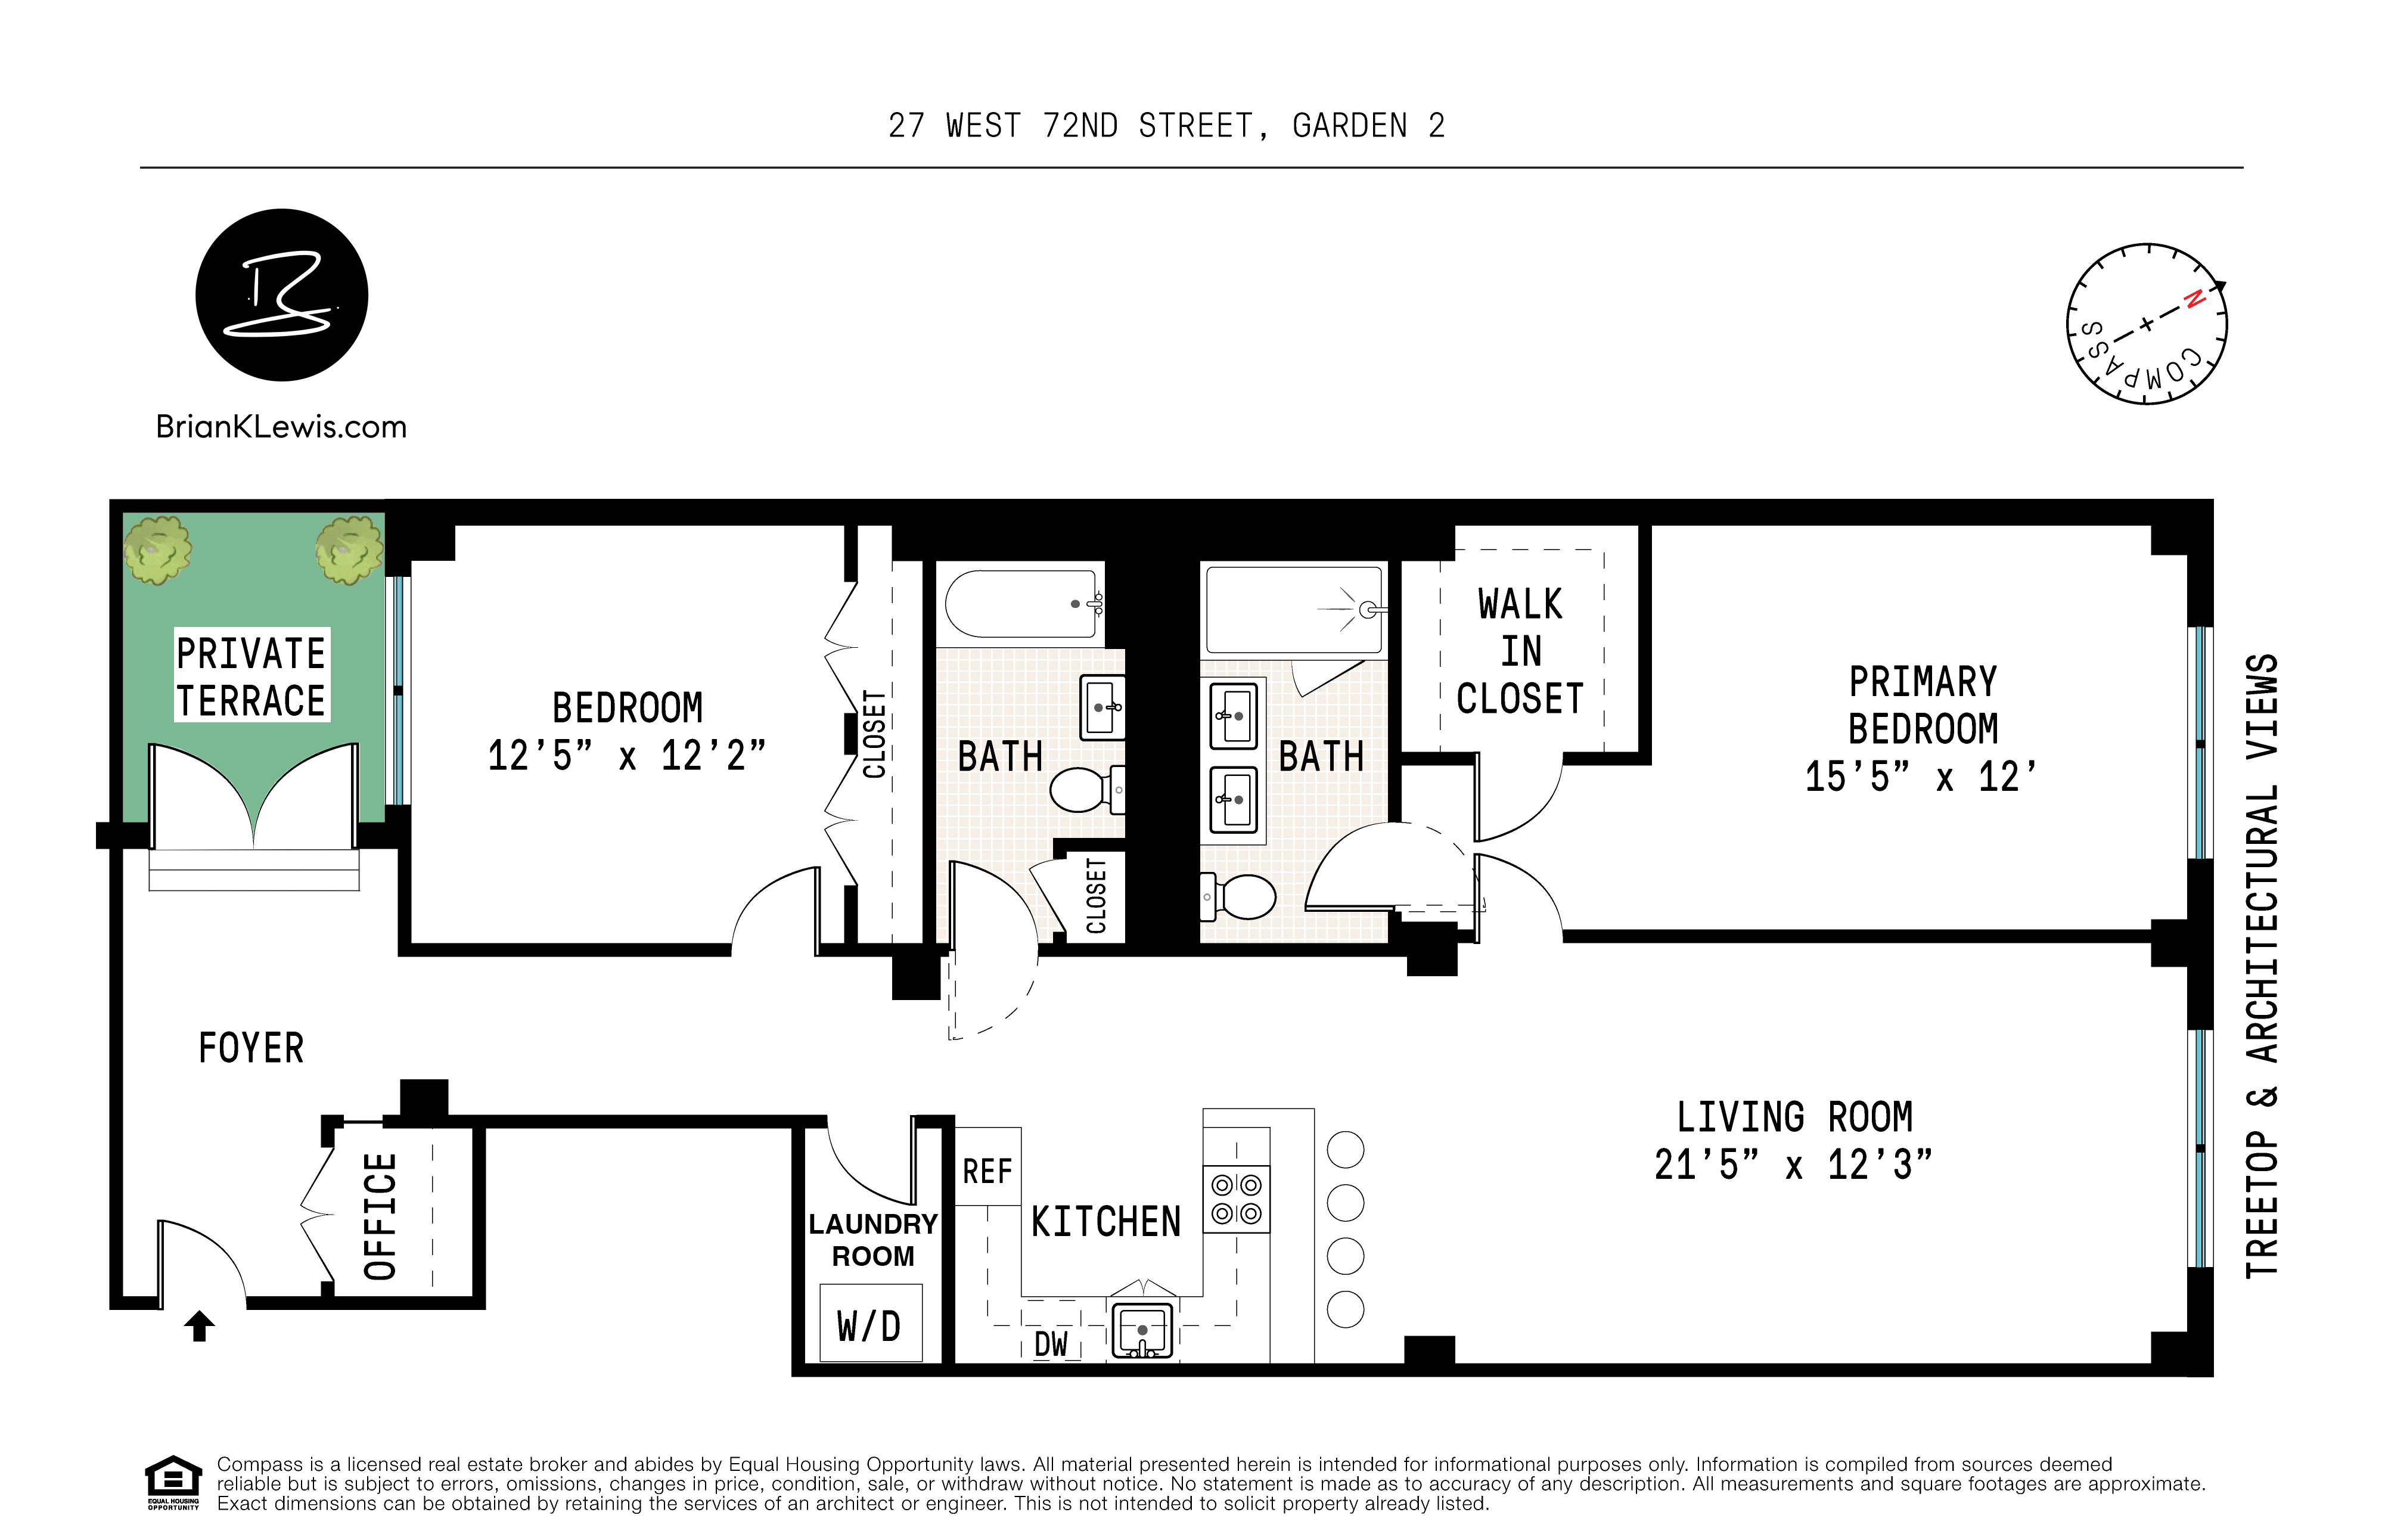 Floorplan for 27 West 72nd Street, G2